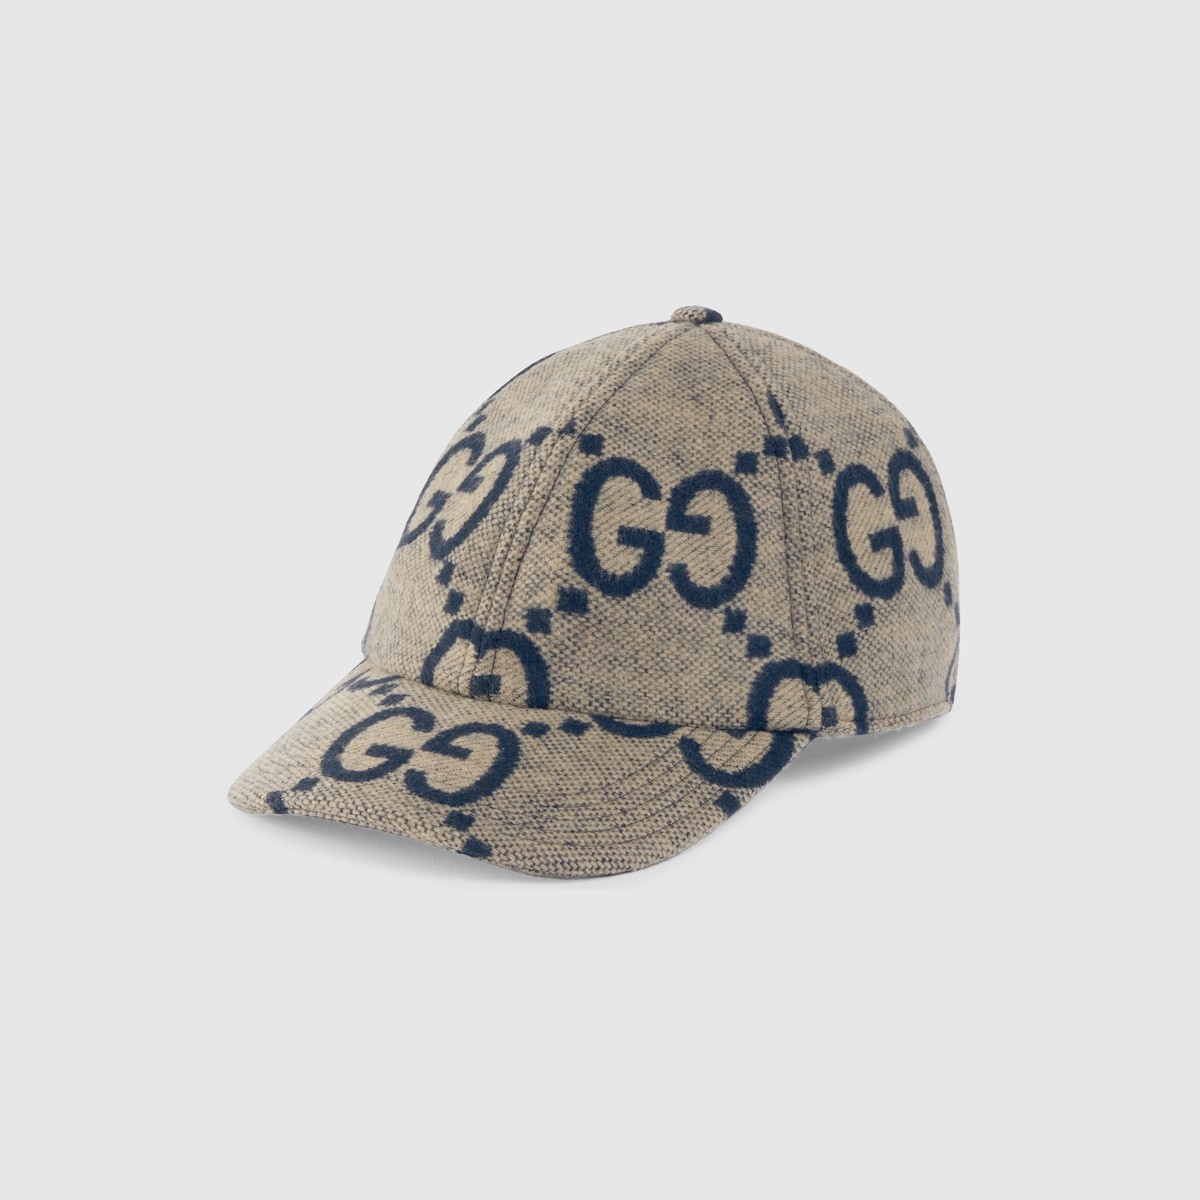 Jumbo GG wool baseball hat - 1